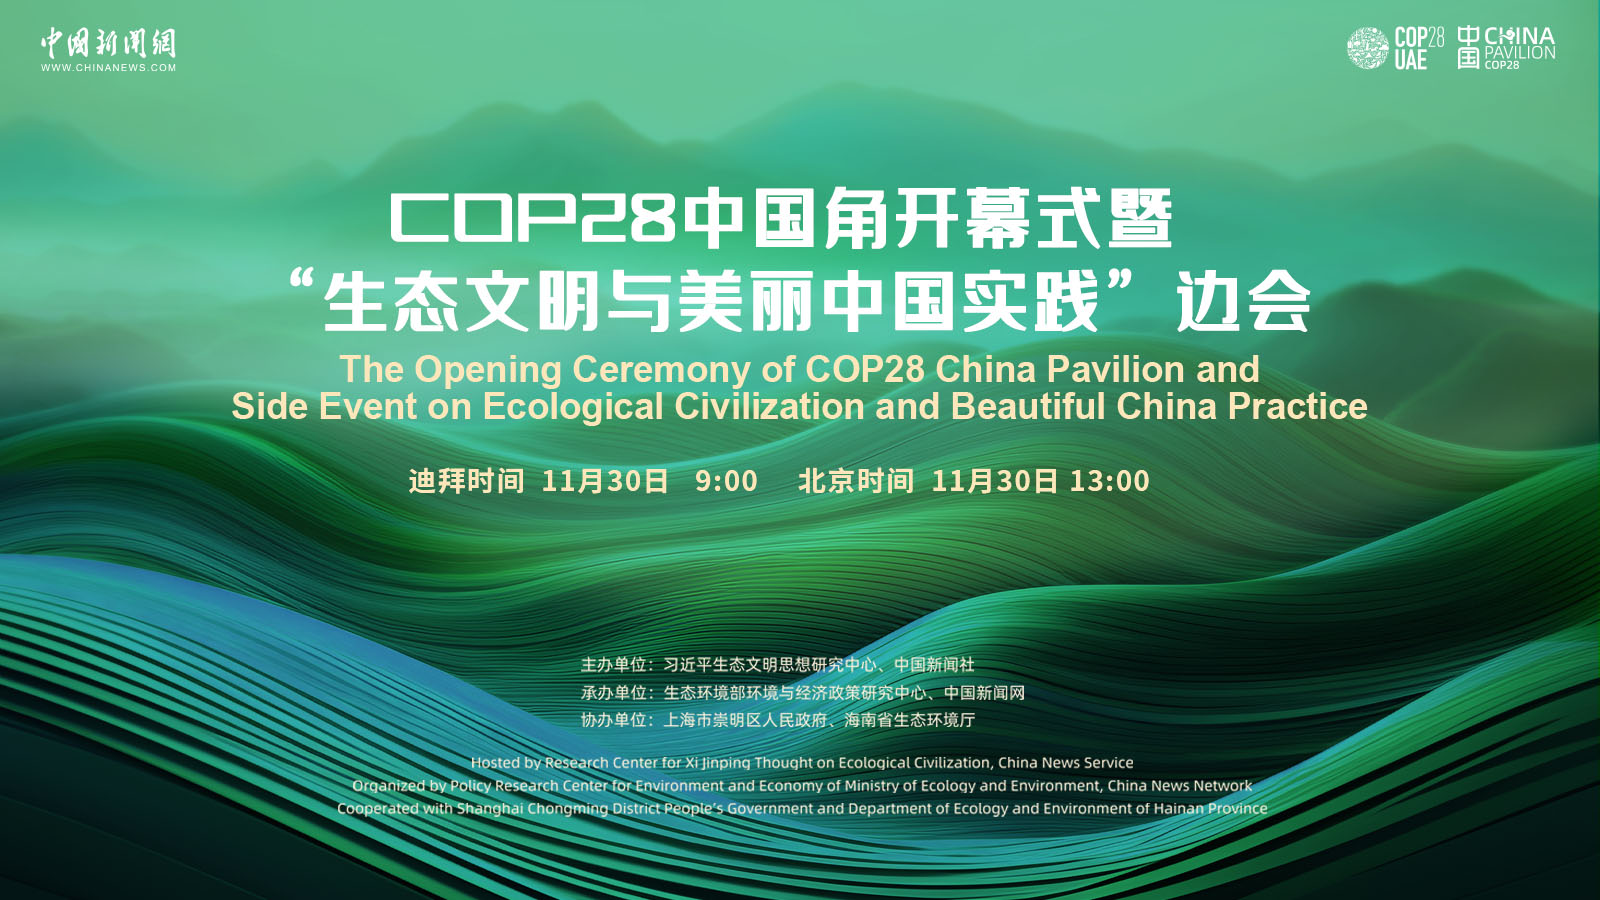 COP28中国角开幕式暨“生态文明与美丽中国实践”边会